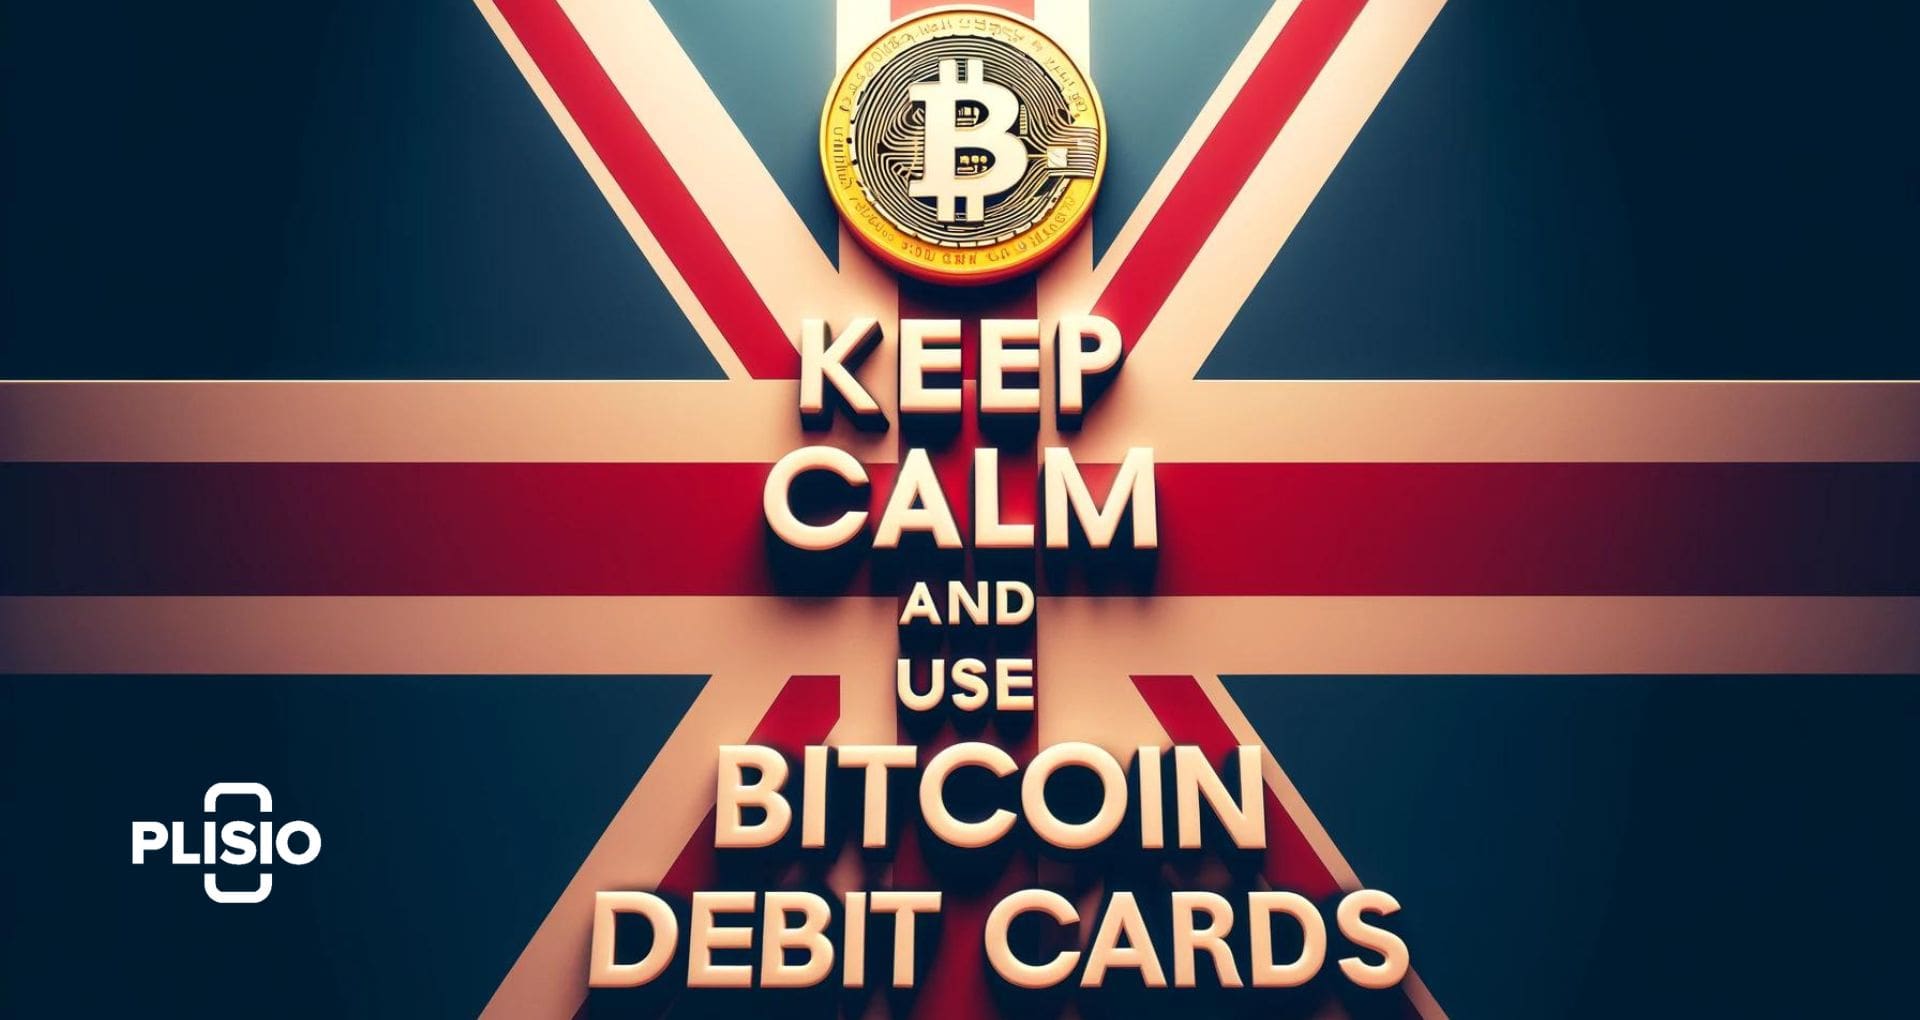 Οι καλύτερες χρεωστικές κάρτες Bitcoin στο Ηνωμένο Βασίλειο